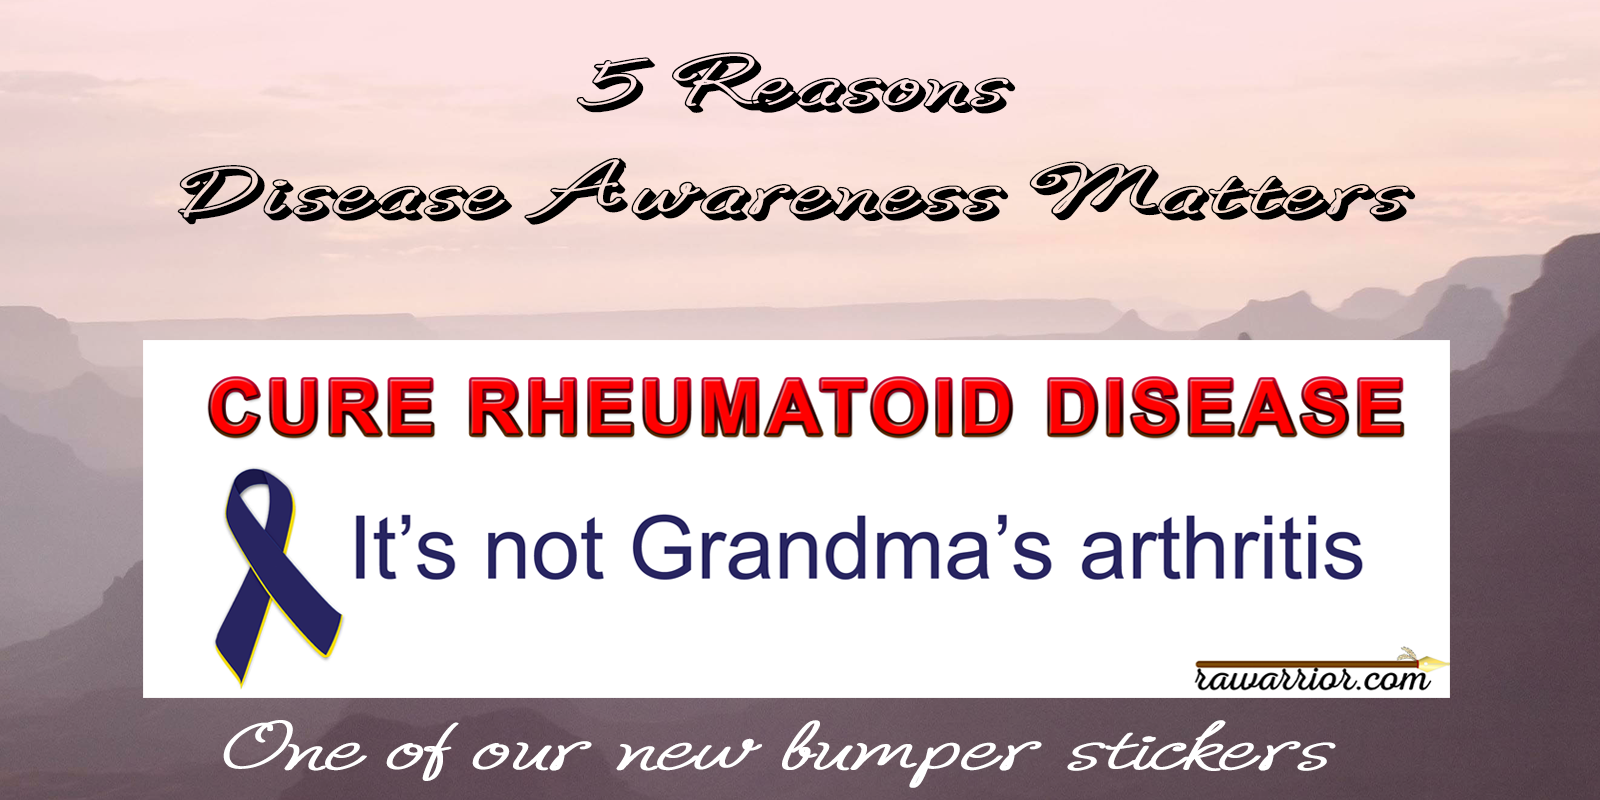 5 Reasons Disease Awareness Matters